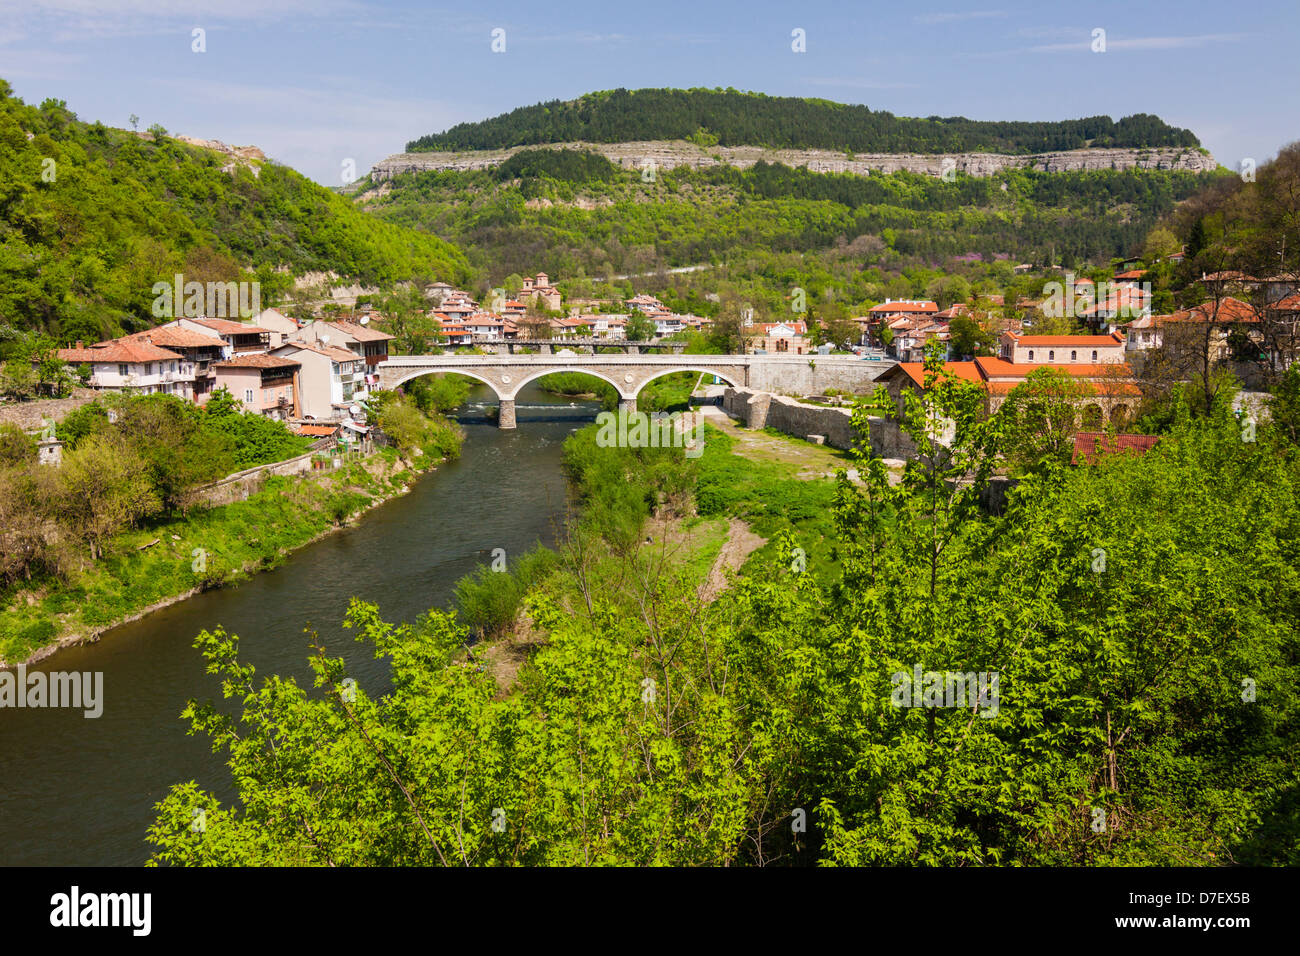 Aperçu de la vieille ville de Veliko Tarnovo et pont de la rivière Yantra. Veliko Tarnovo, Bulgarie Banque D'Images